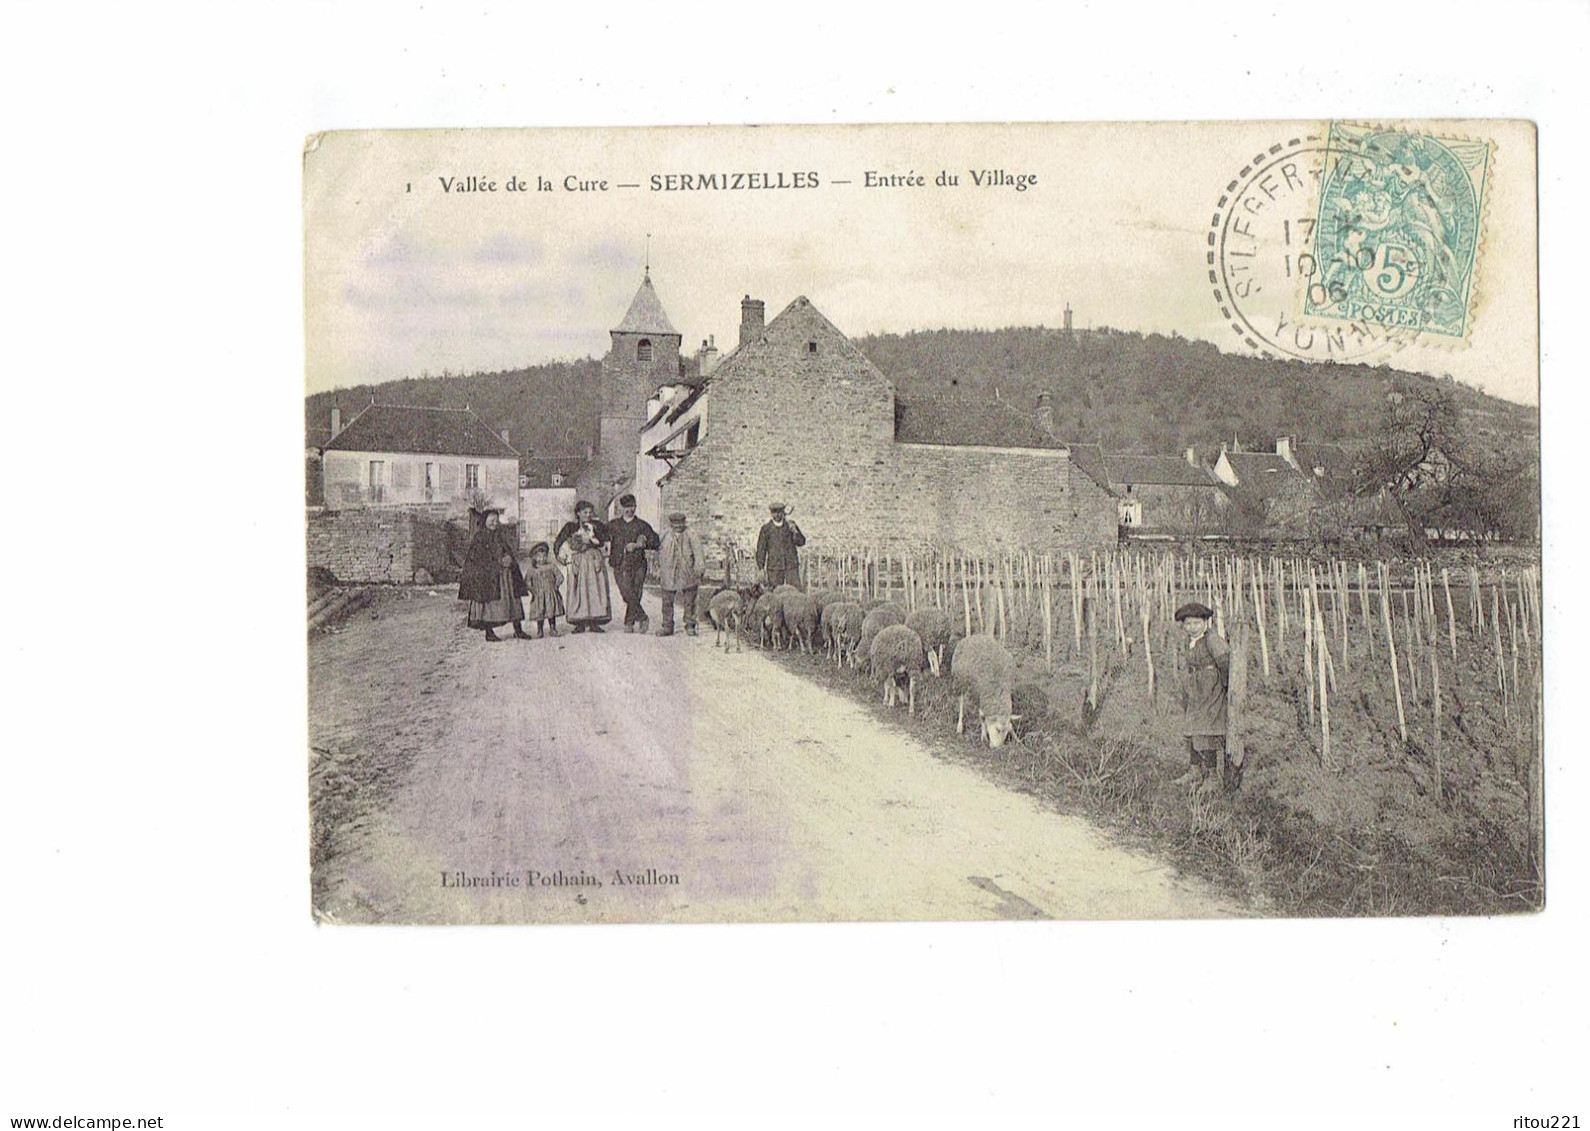 Cpa - 89 - SERMIZELLES - Entrée Du Village - Vallée De La Cure - N°1 Pothain - Animation Moutons - 1906 - Saint Sauveur En Puisaye